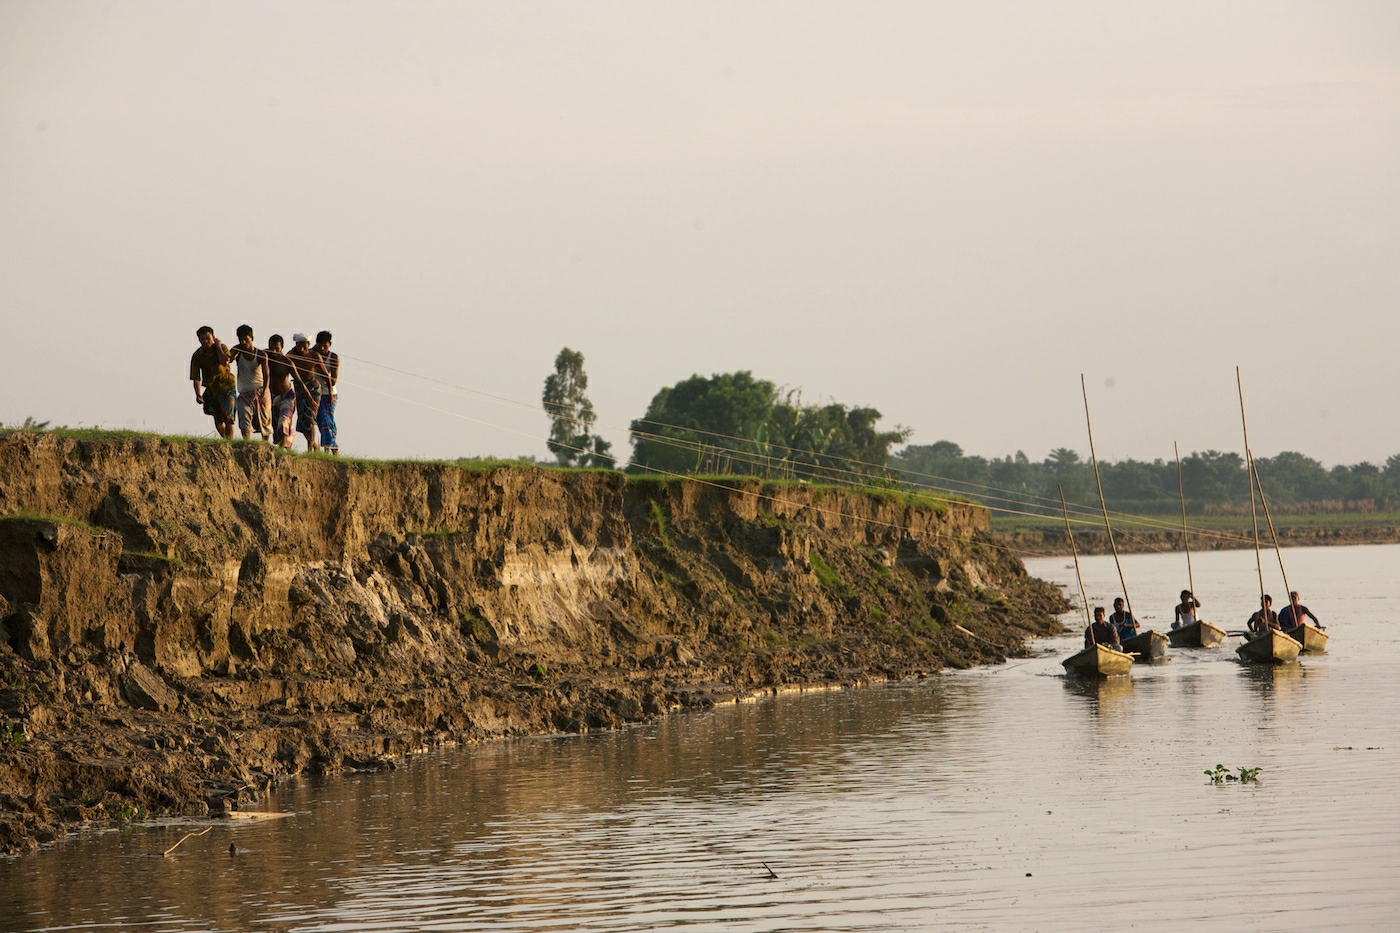 Flodbankserosion är vanligt i Bangladesh. Foto: Sujan Map | IPS